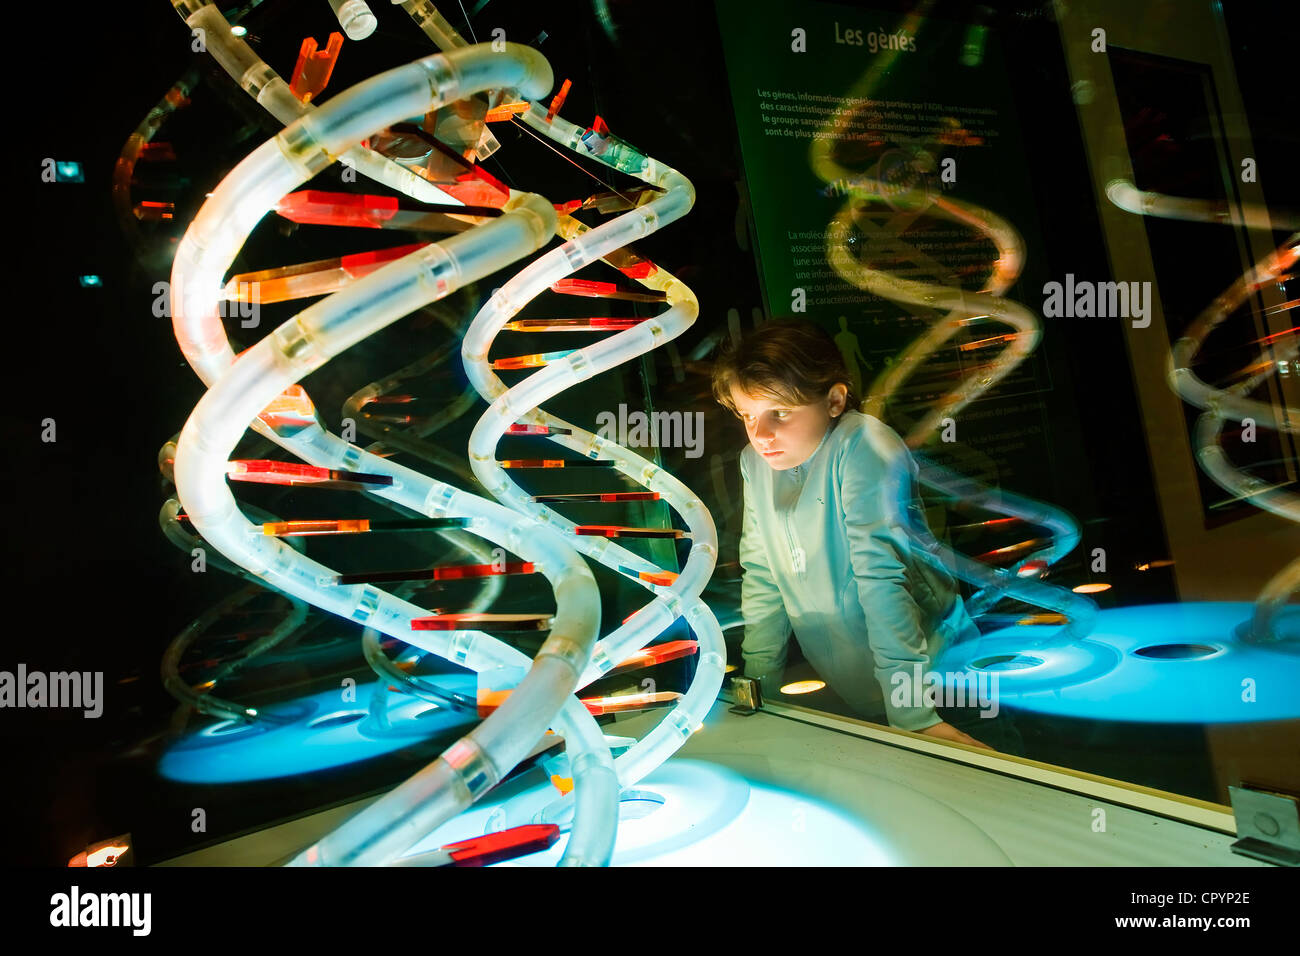 France, Paris, Palais de la Decouverte (Palais de la découverte), la salle d'exposition sur les gènes, glasswindow avec DNA helix Banque D'Images